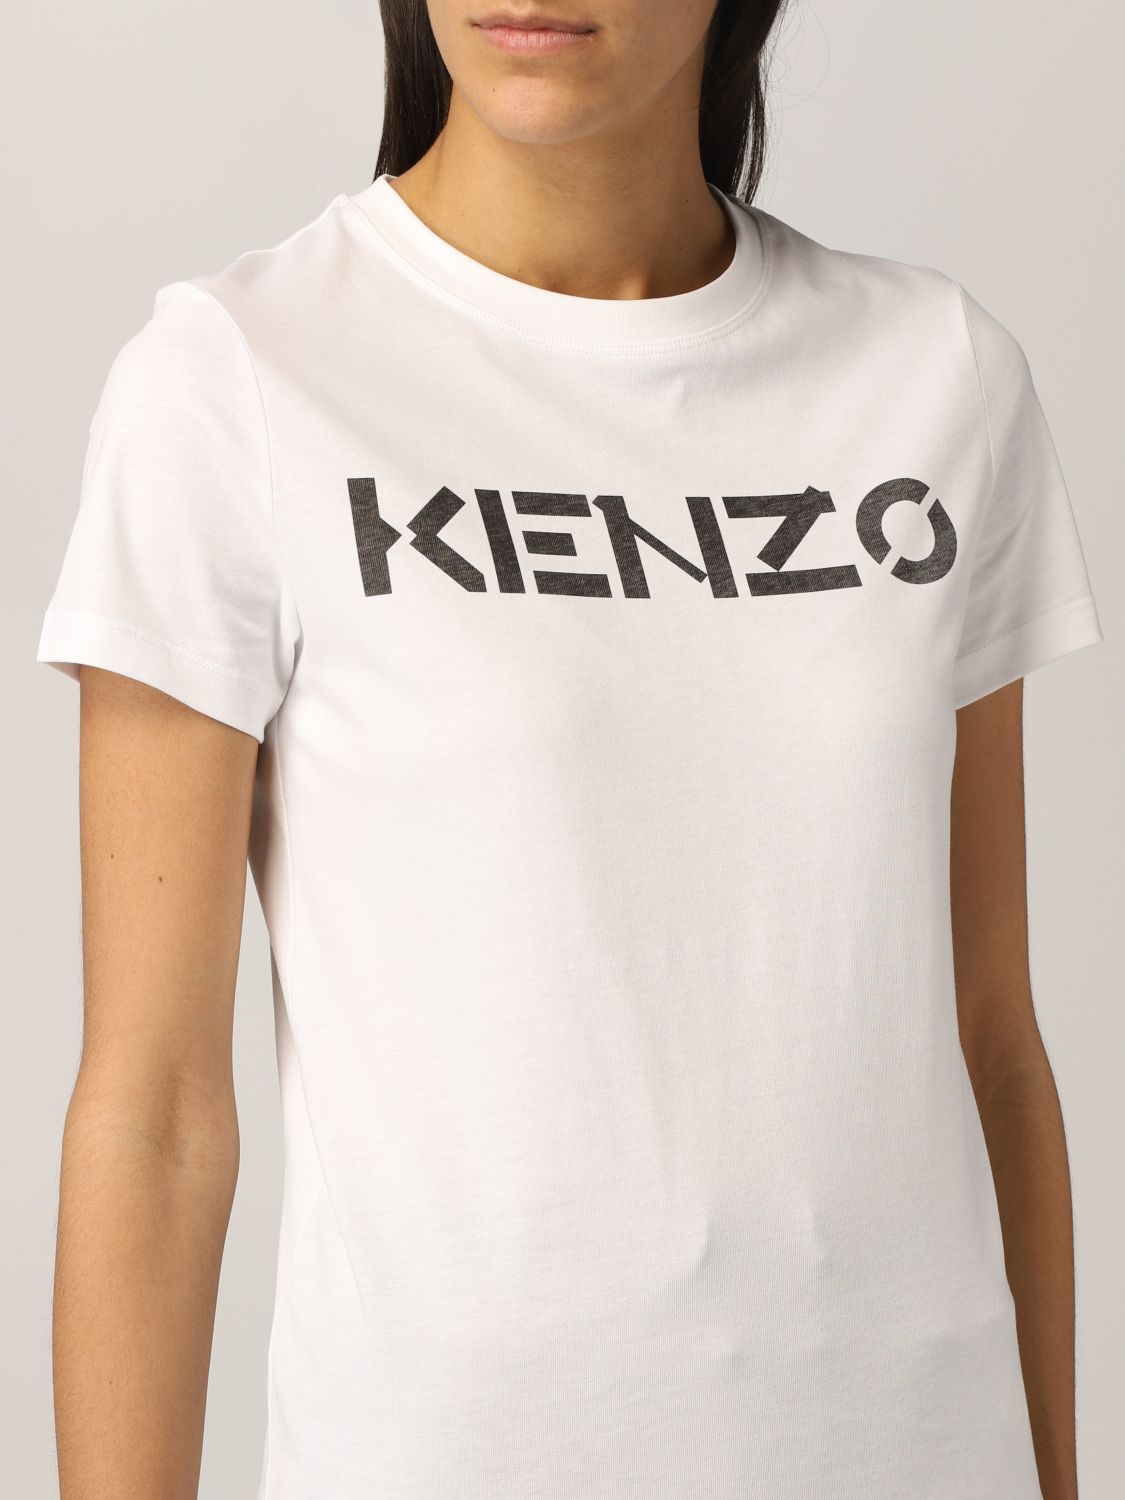 kenzo t shirt for women